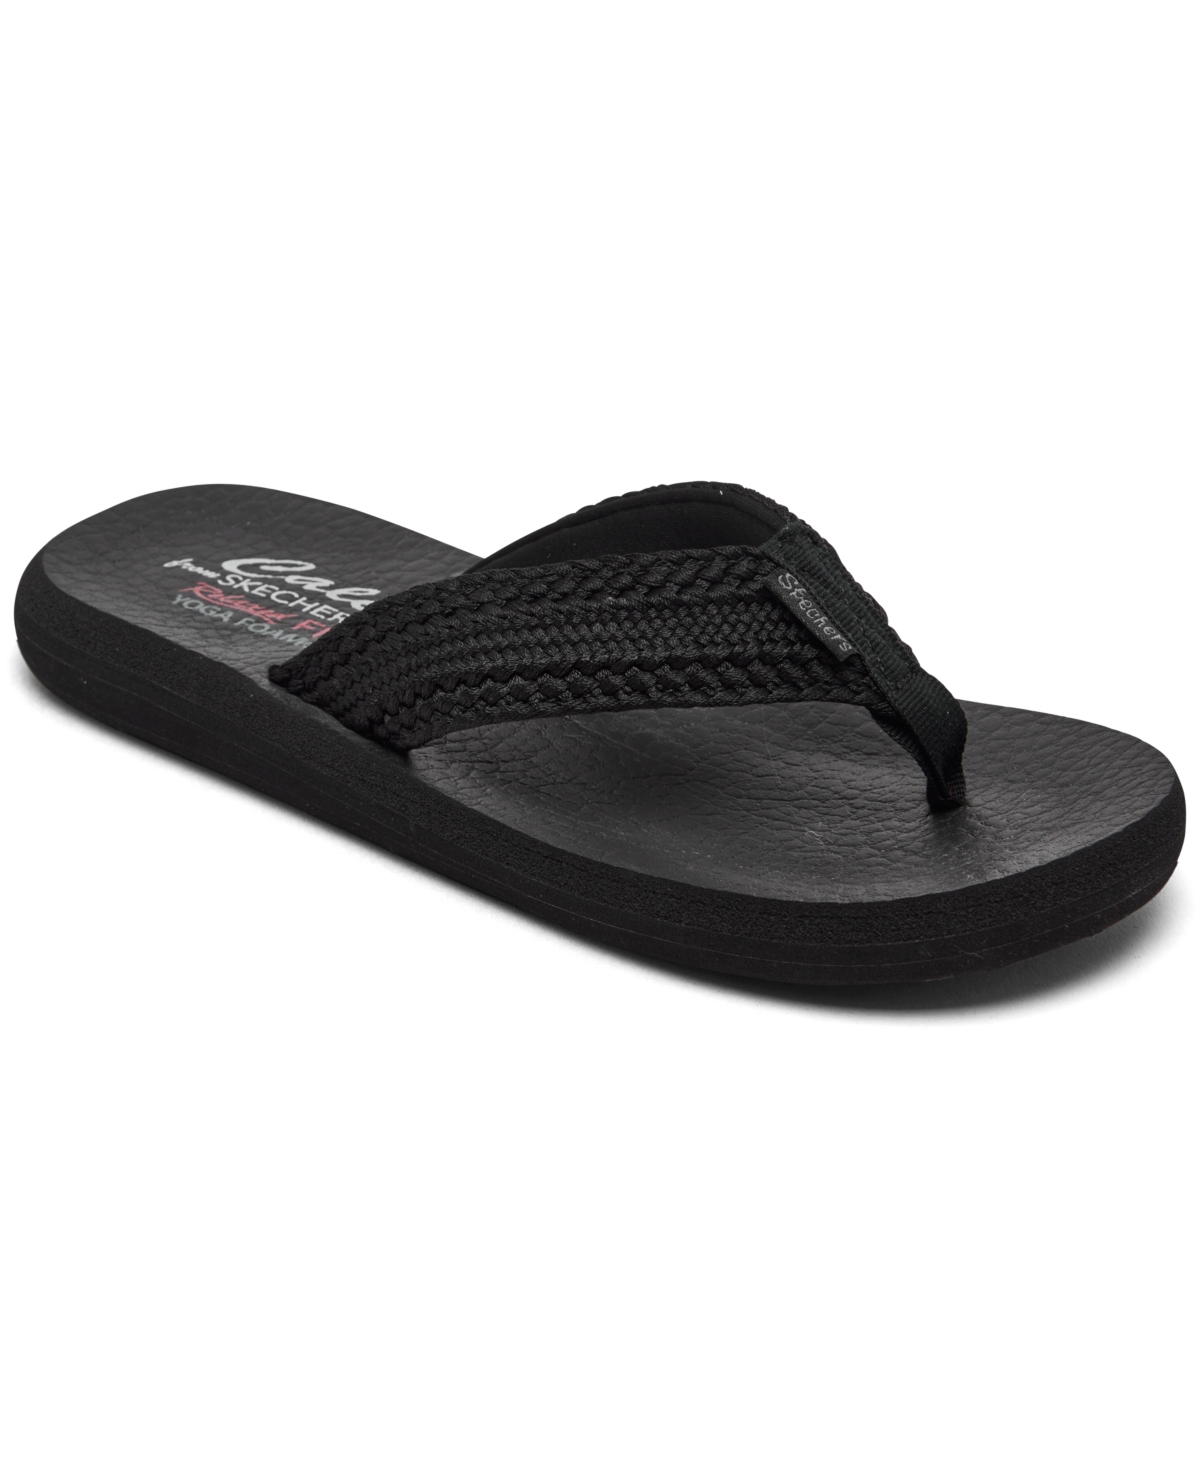 Women's Cali Asana - Hidden Valley Flip Flop Thong Sandals from Finish Line - Black